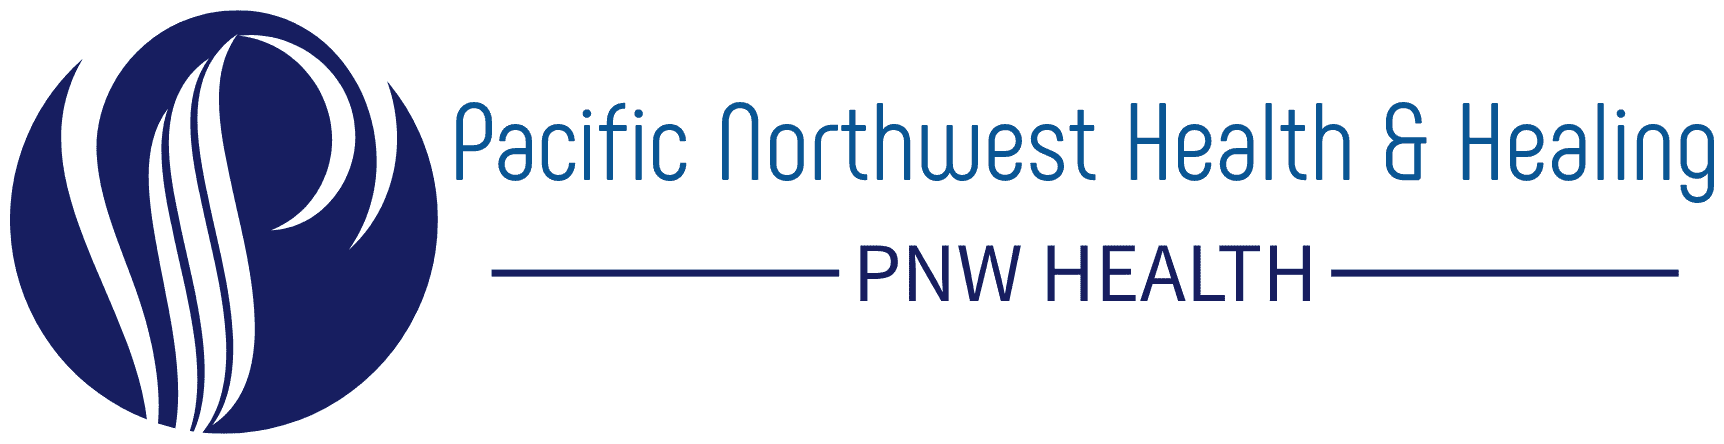 Pacific northwest health  healing main logo